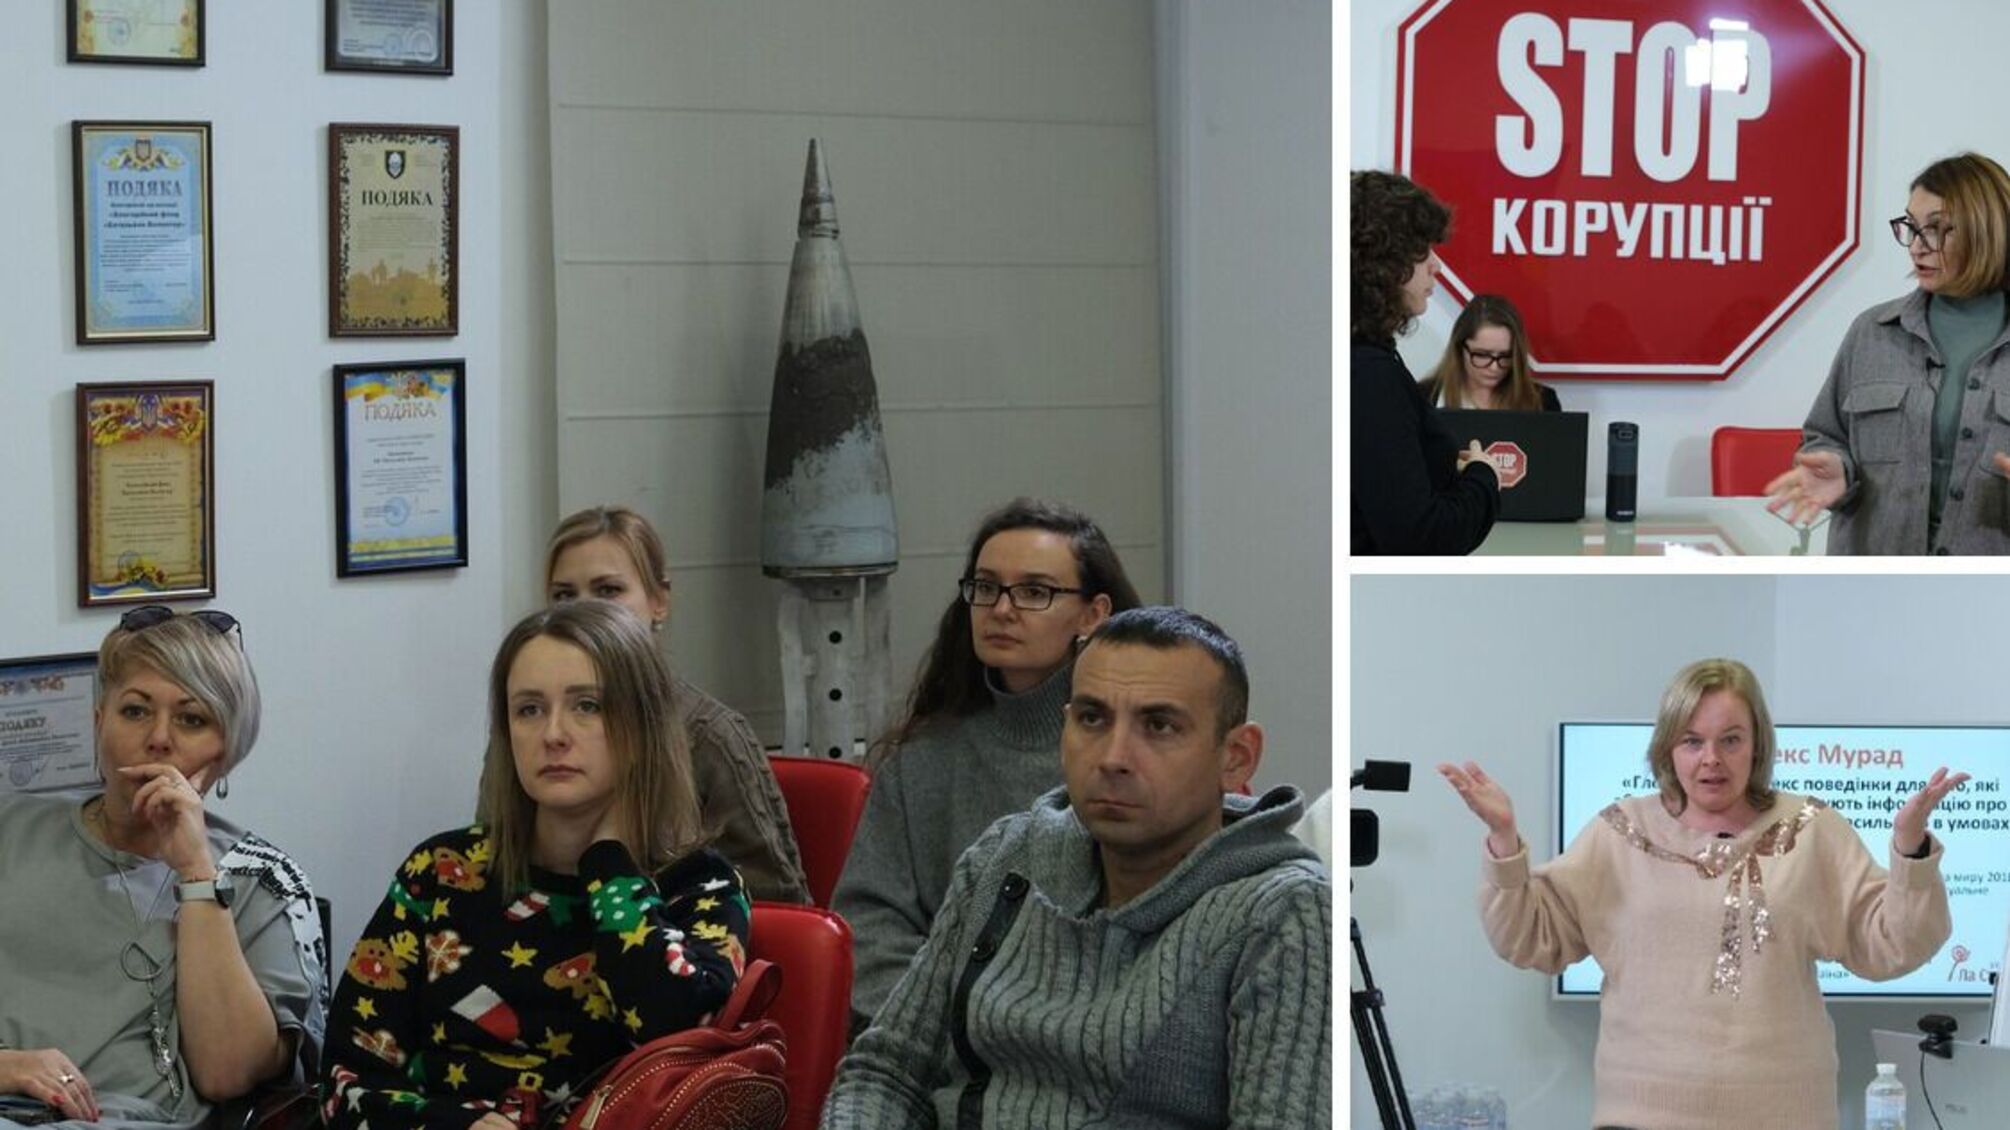 Як працювати з постраждалими від сексуального насильства: у Києві відбувся тренінг для журналістів (відео)